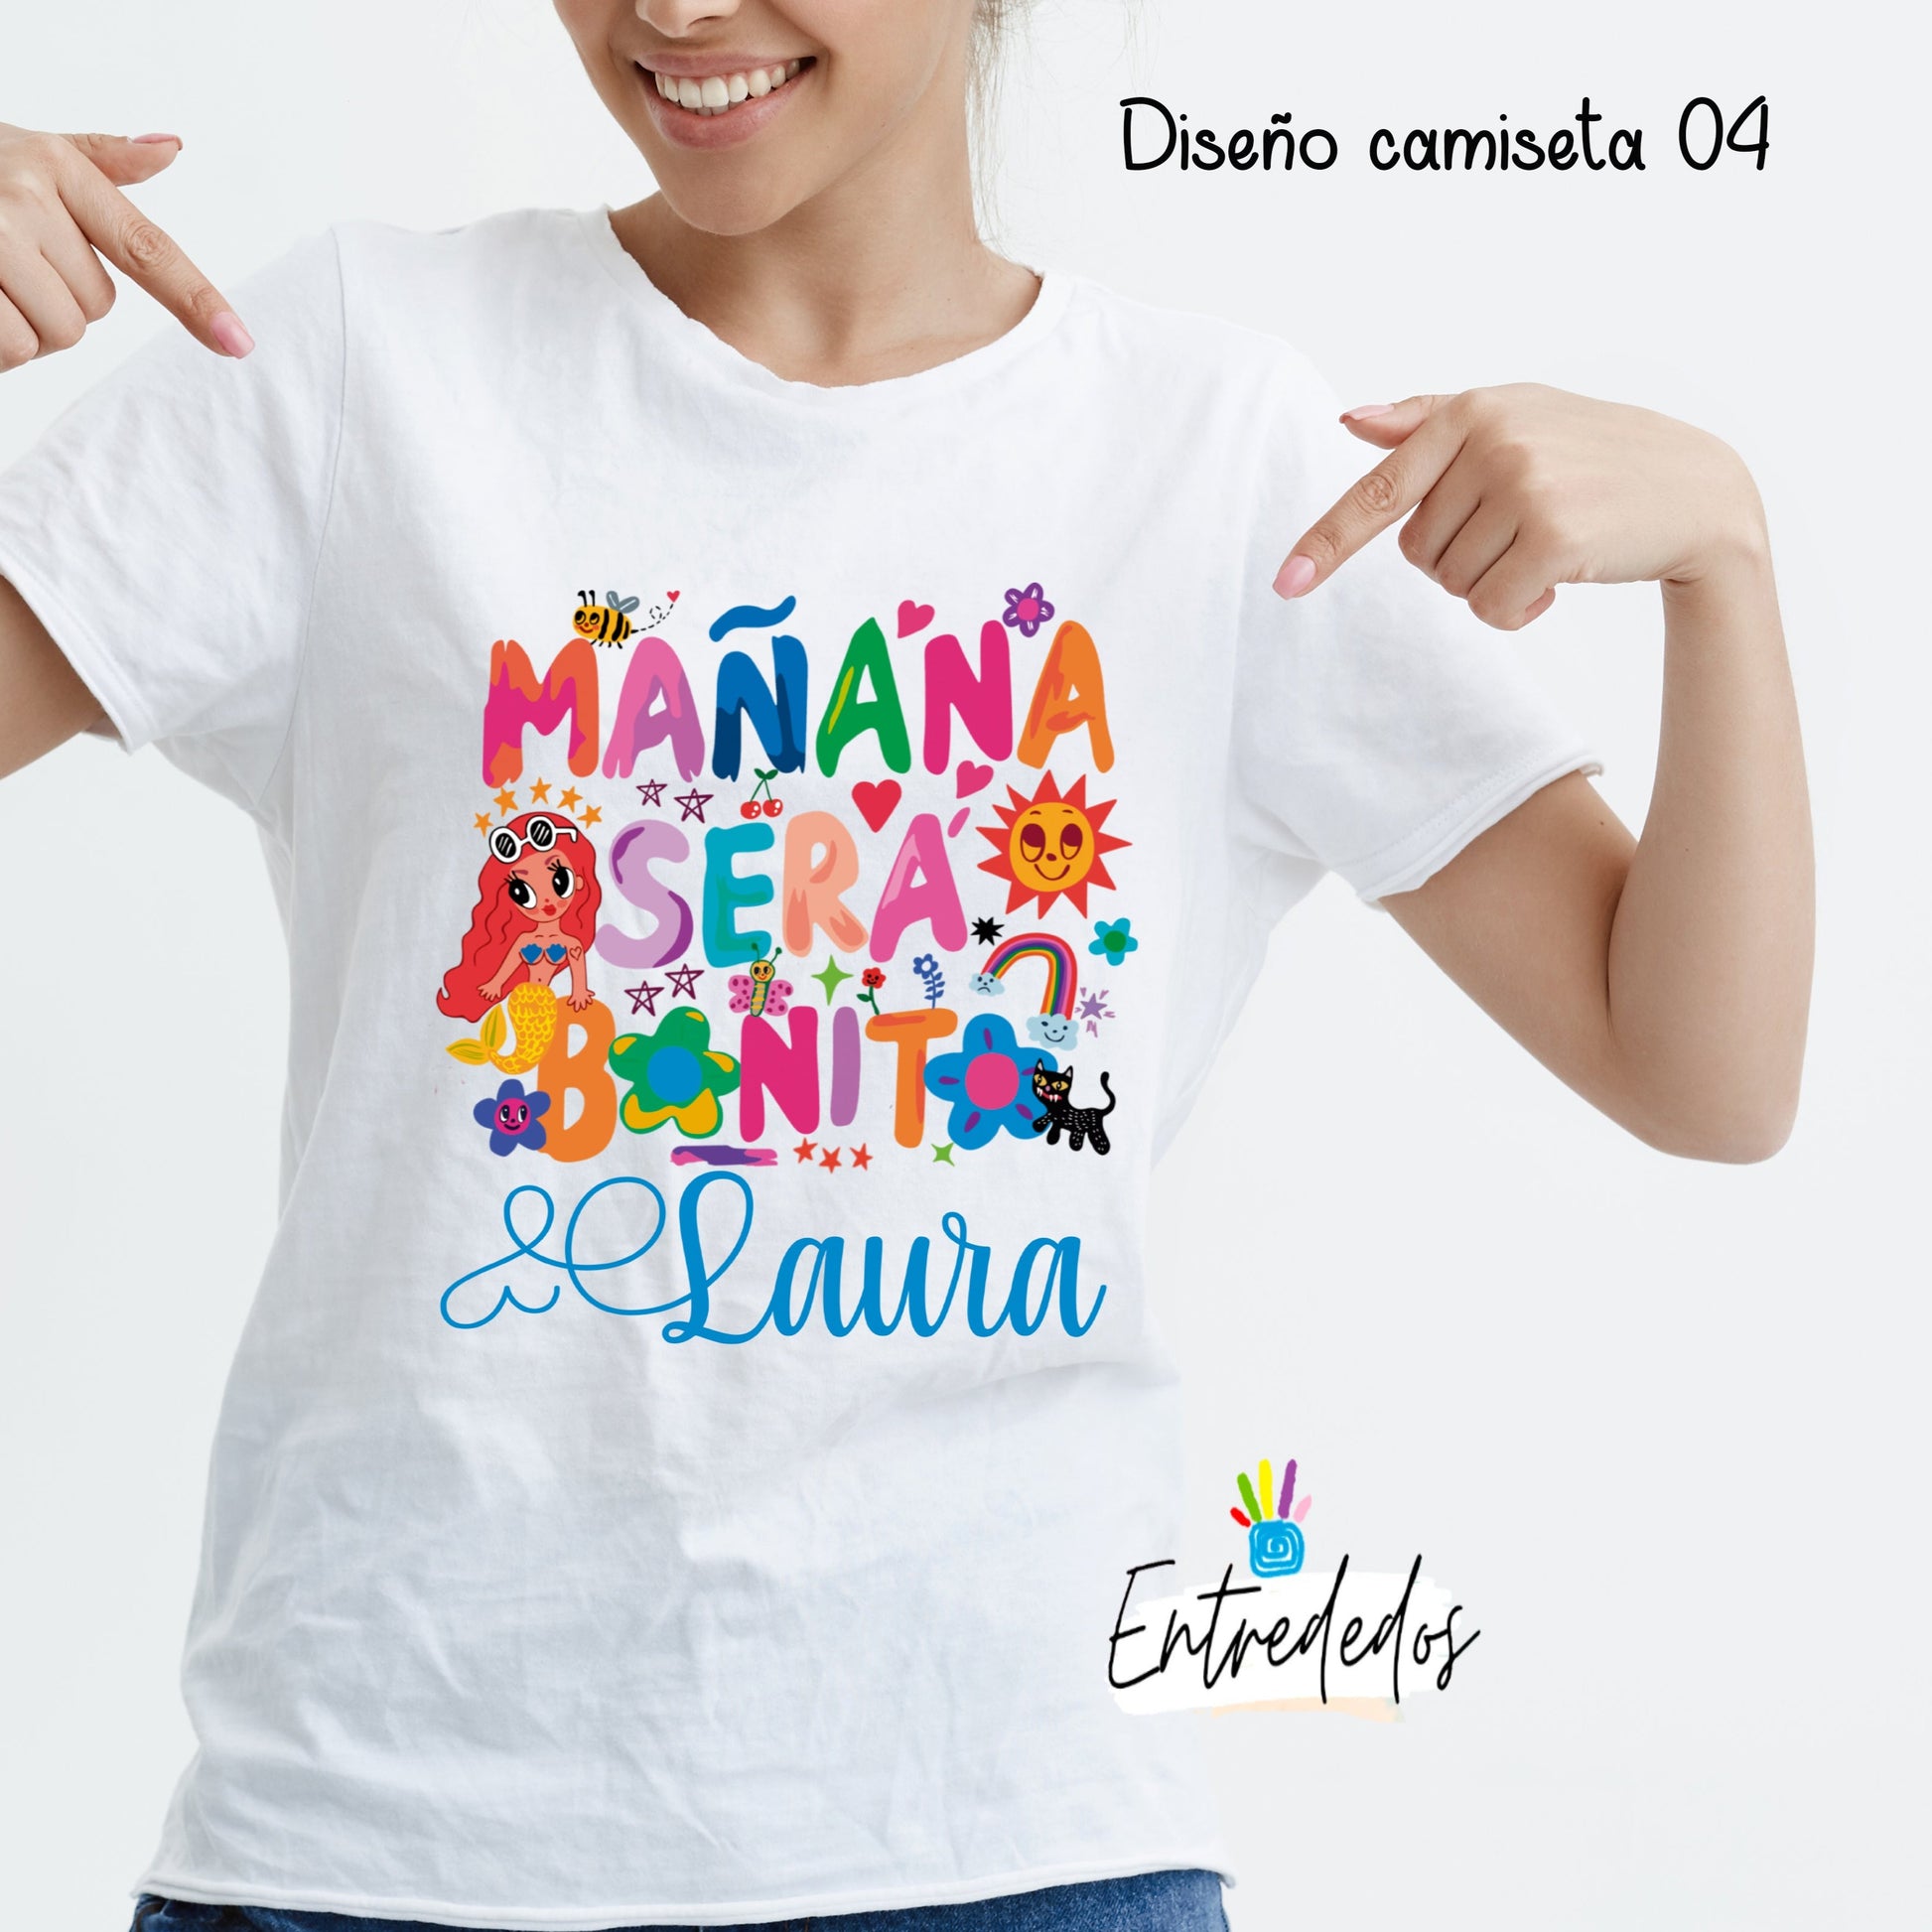 Camiseta Bichota Season - Karol G – El Parche Tienda